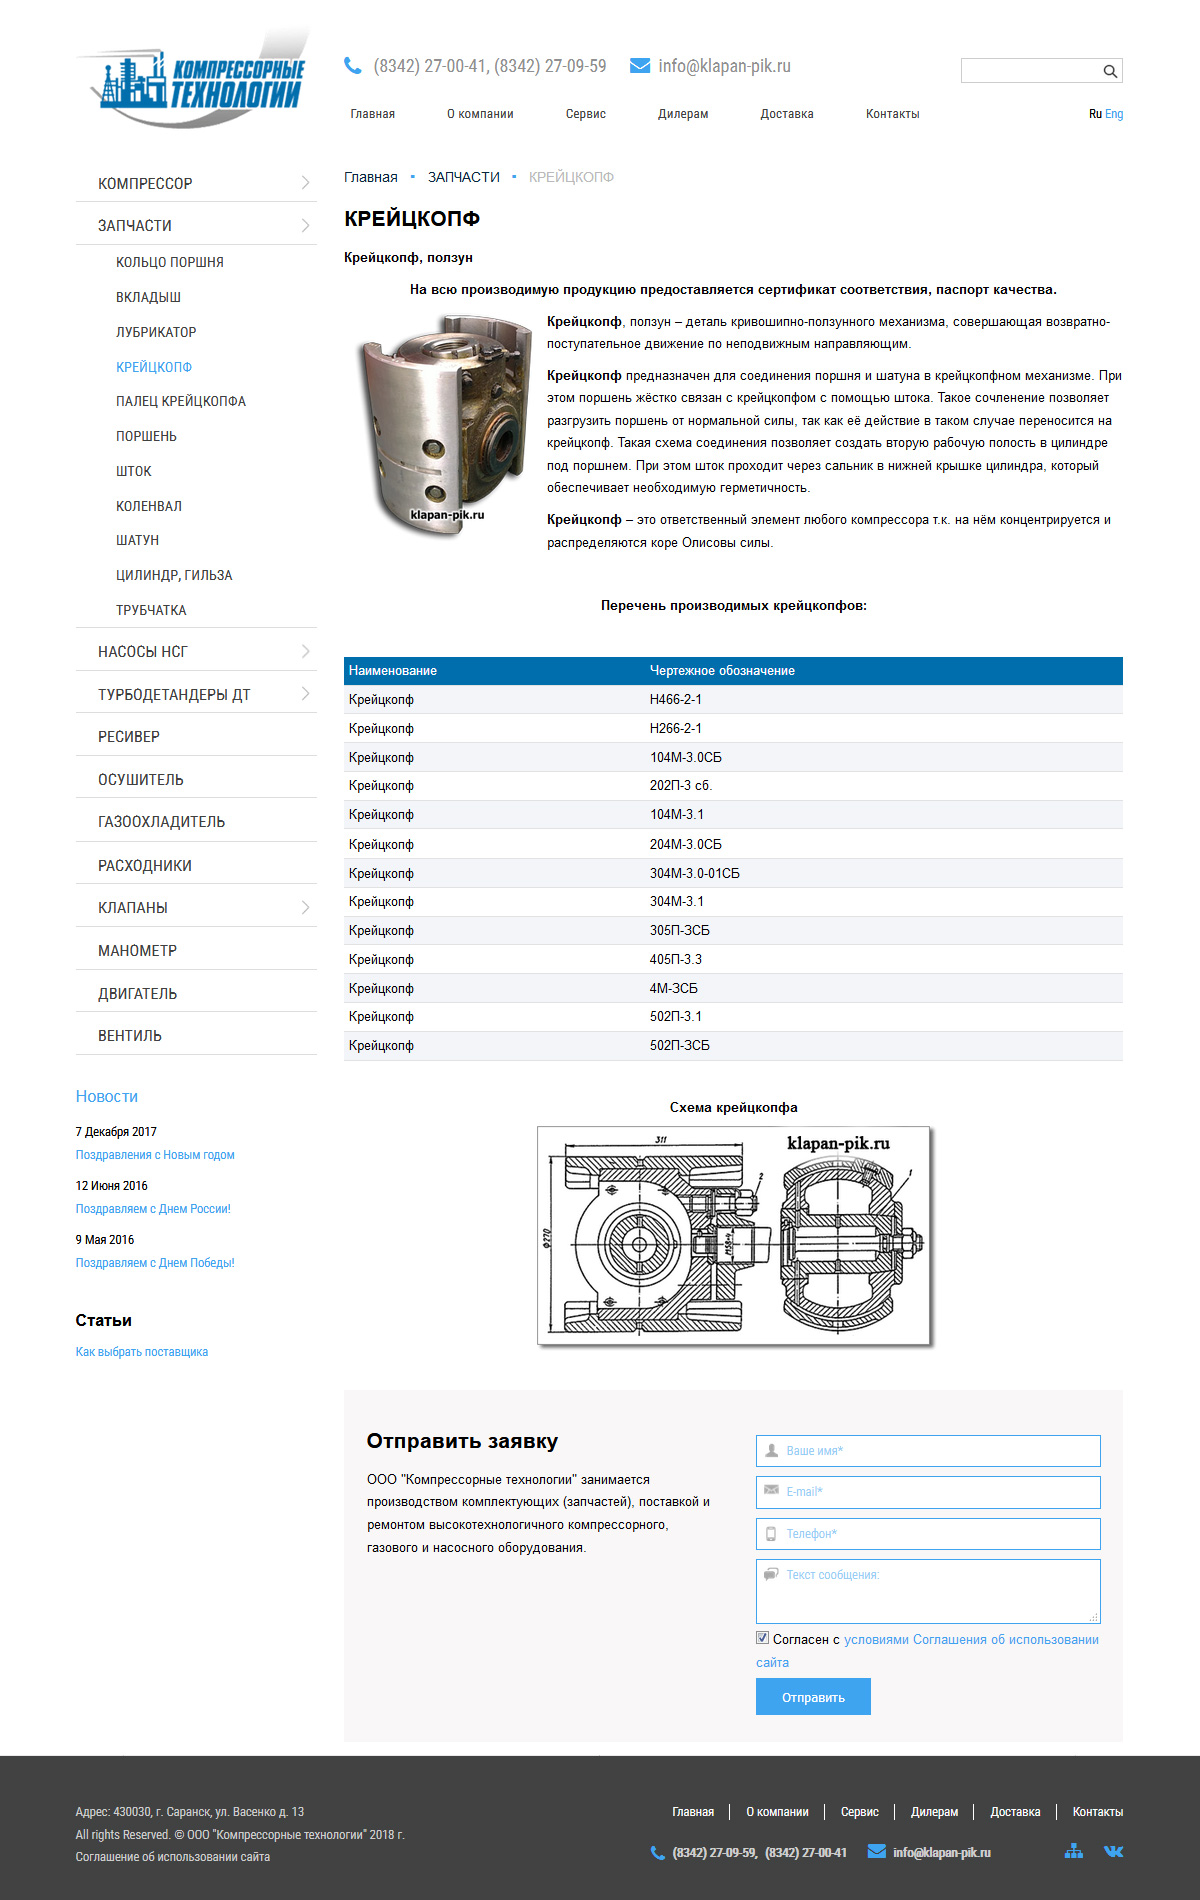 компрессорные технологии – производство запчастей для компрессоров